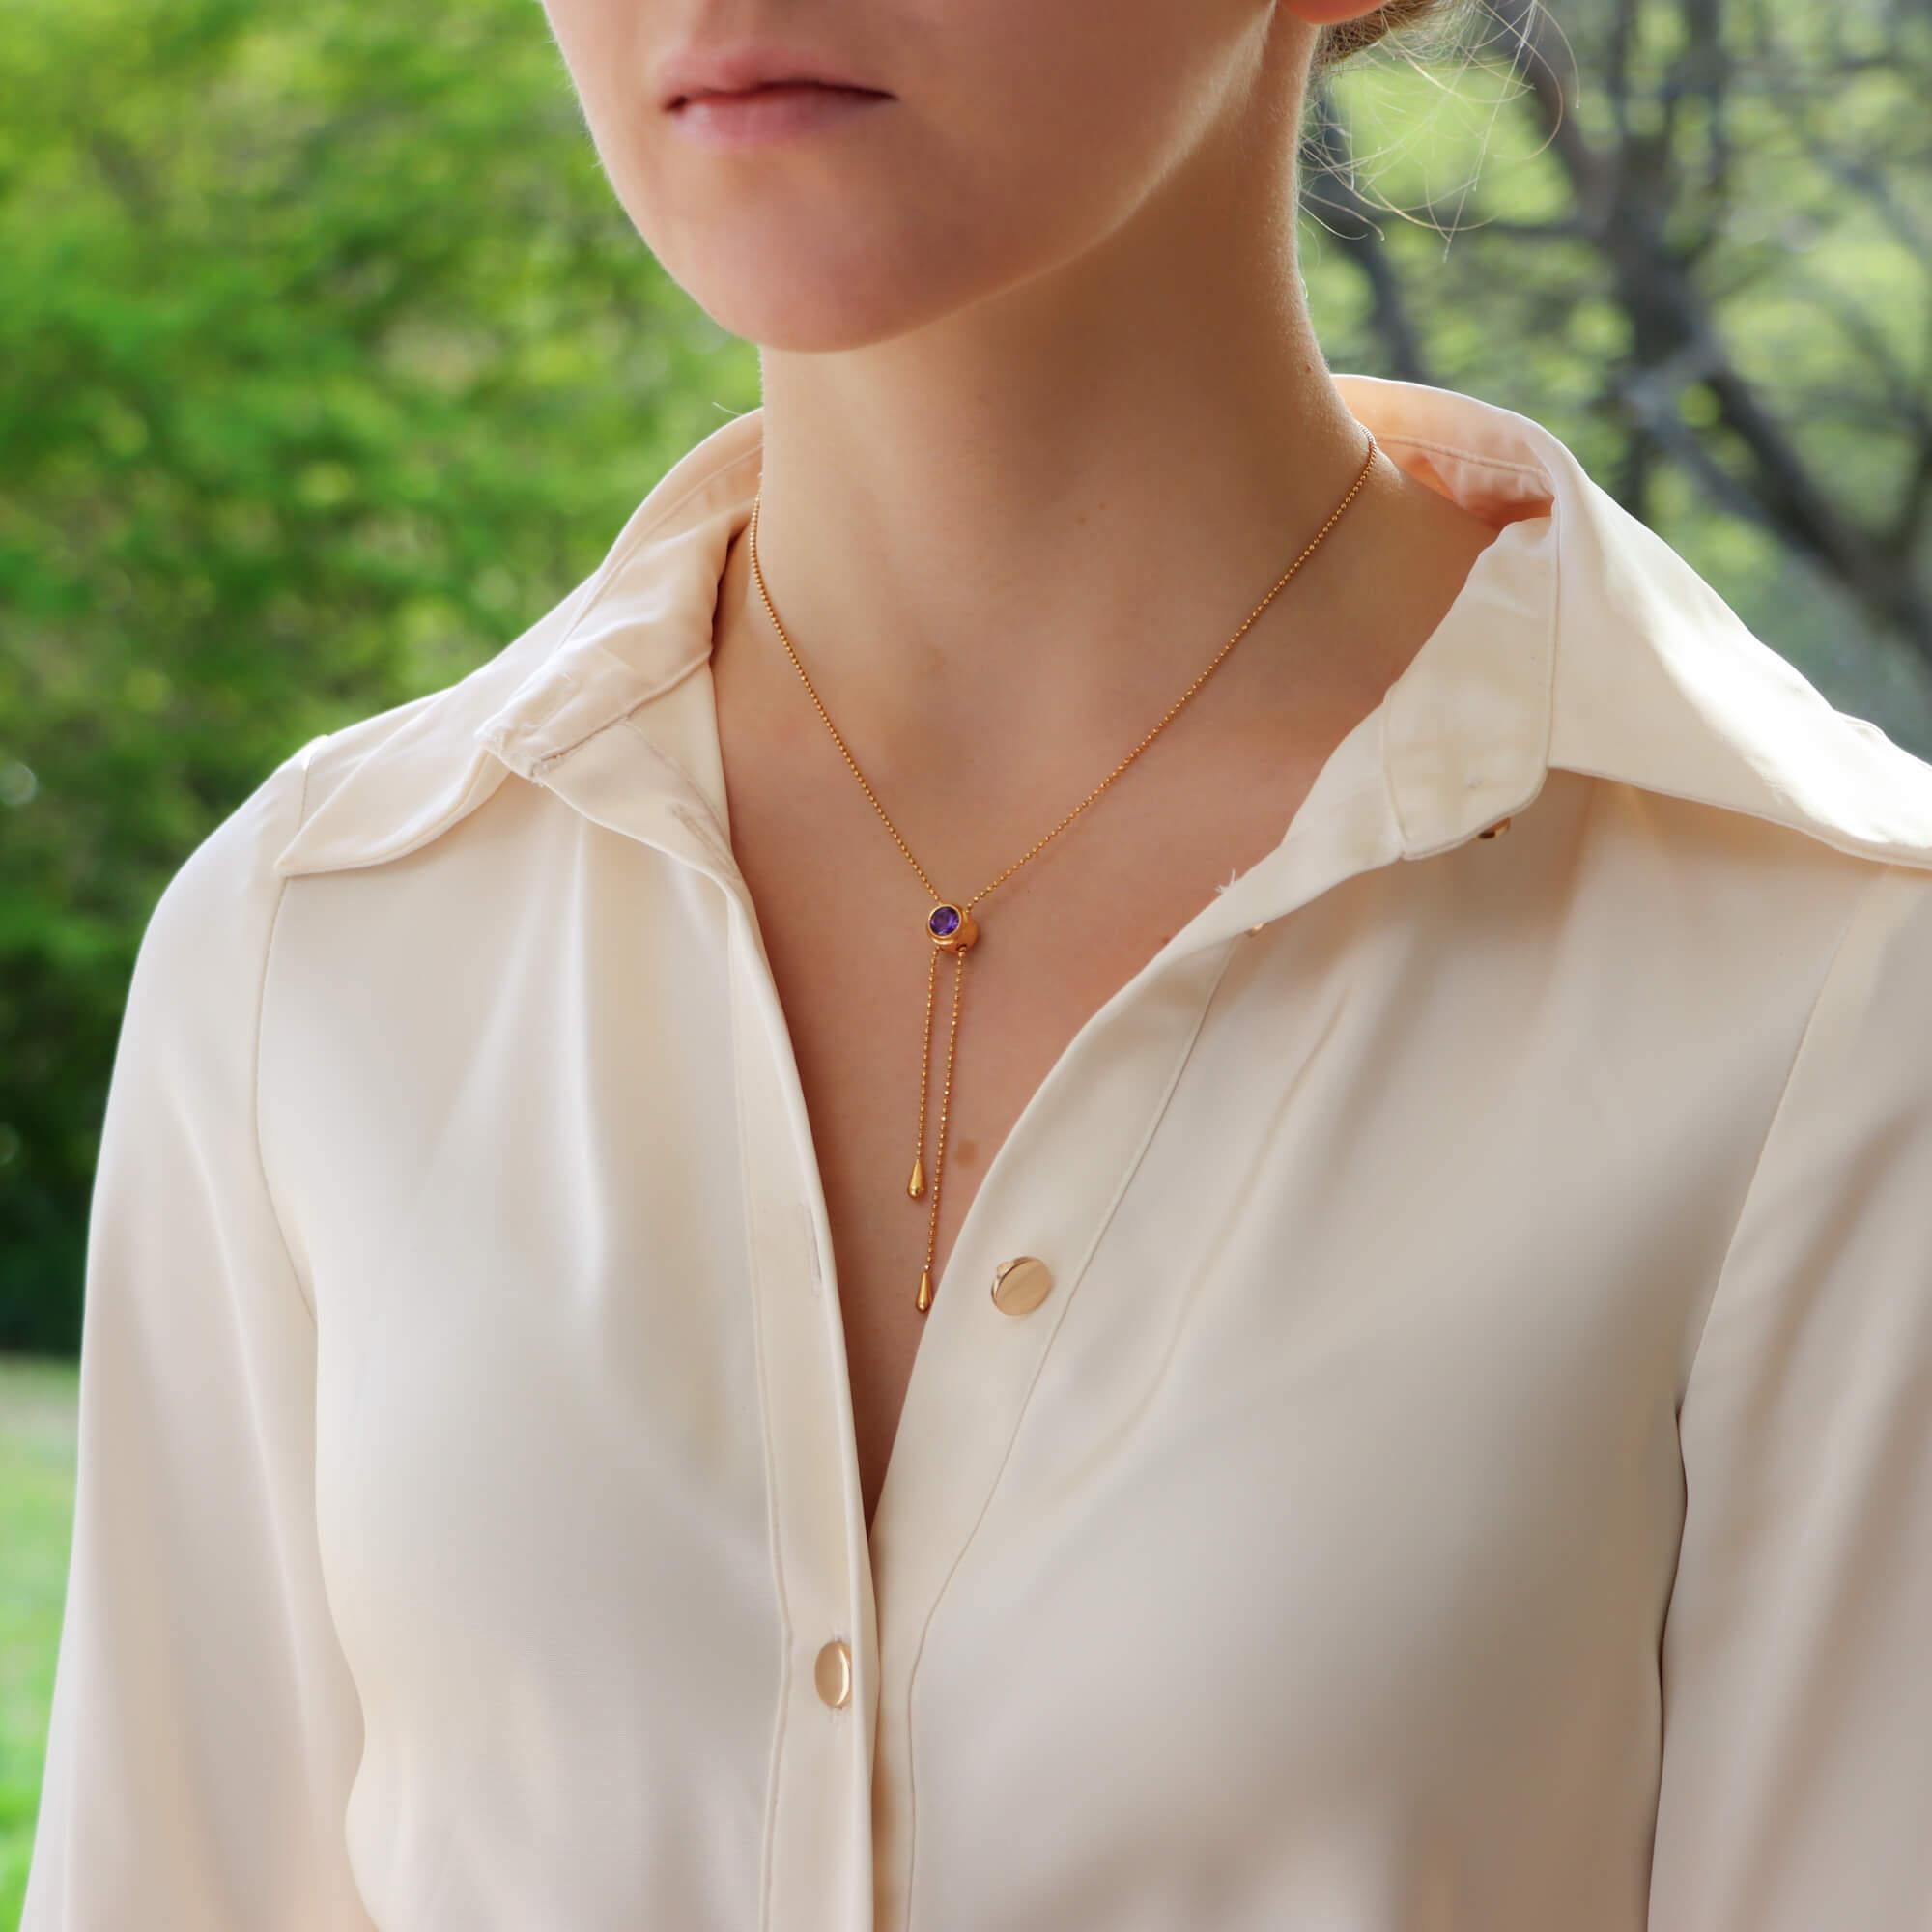  Eine schöne italienische Vintage Amethyst verstellbare Quaste Halskette in 14k Gelbgold gesetzt.

Diese Halskette ist wunderschön handgefertigt und zeichnet sich vor allem durch einen facettierten Amethysten aus. Der Amethyst dient als Verschluss